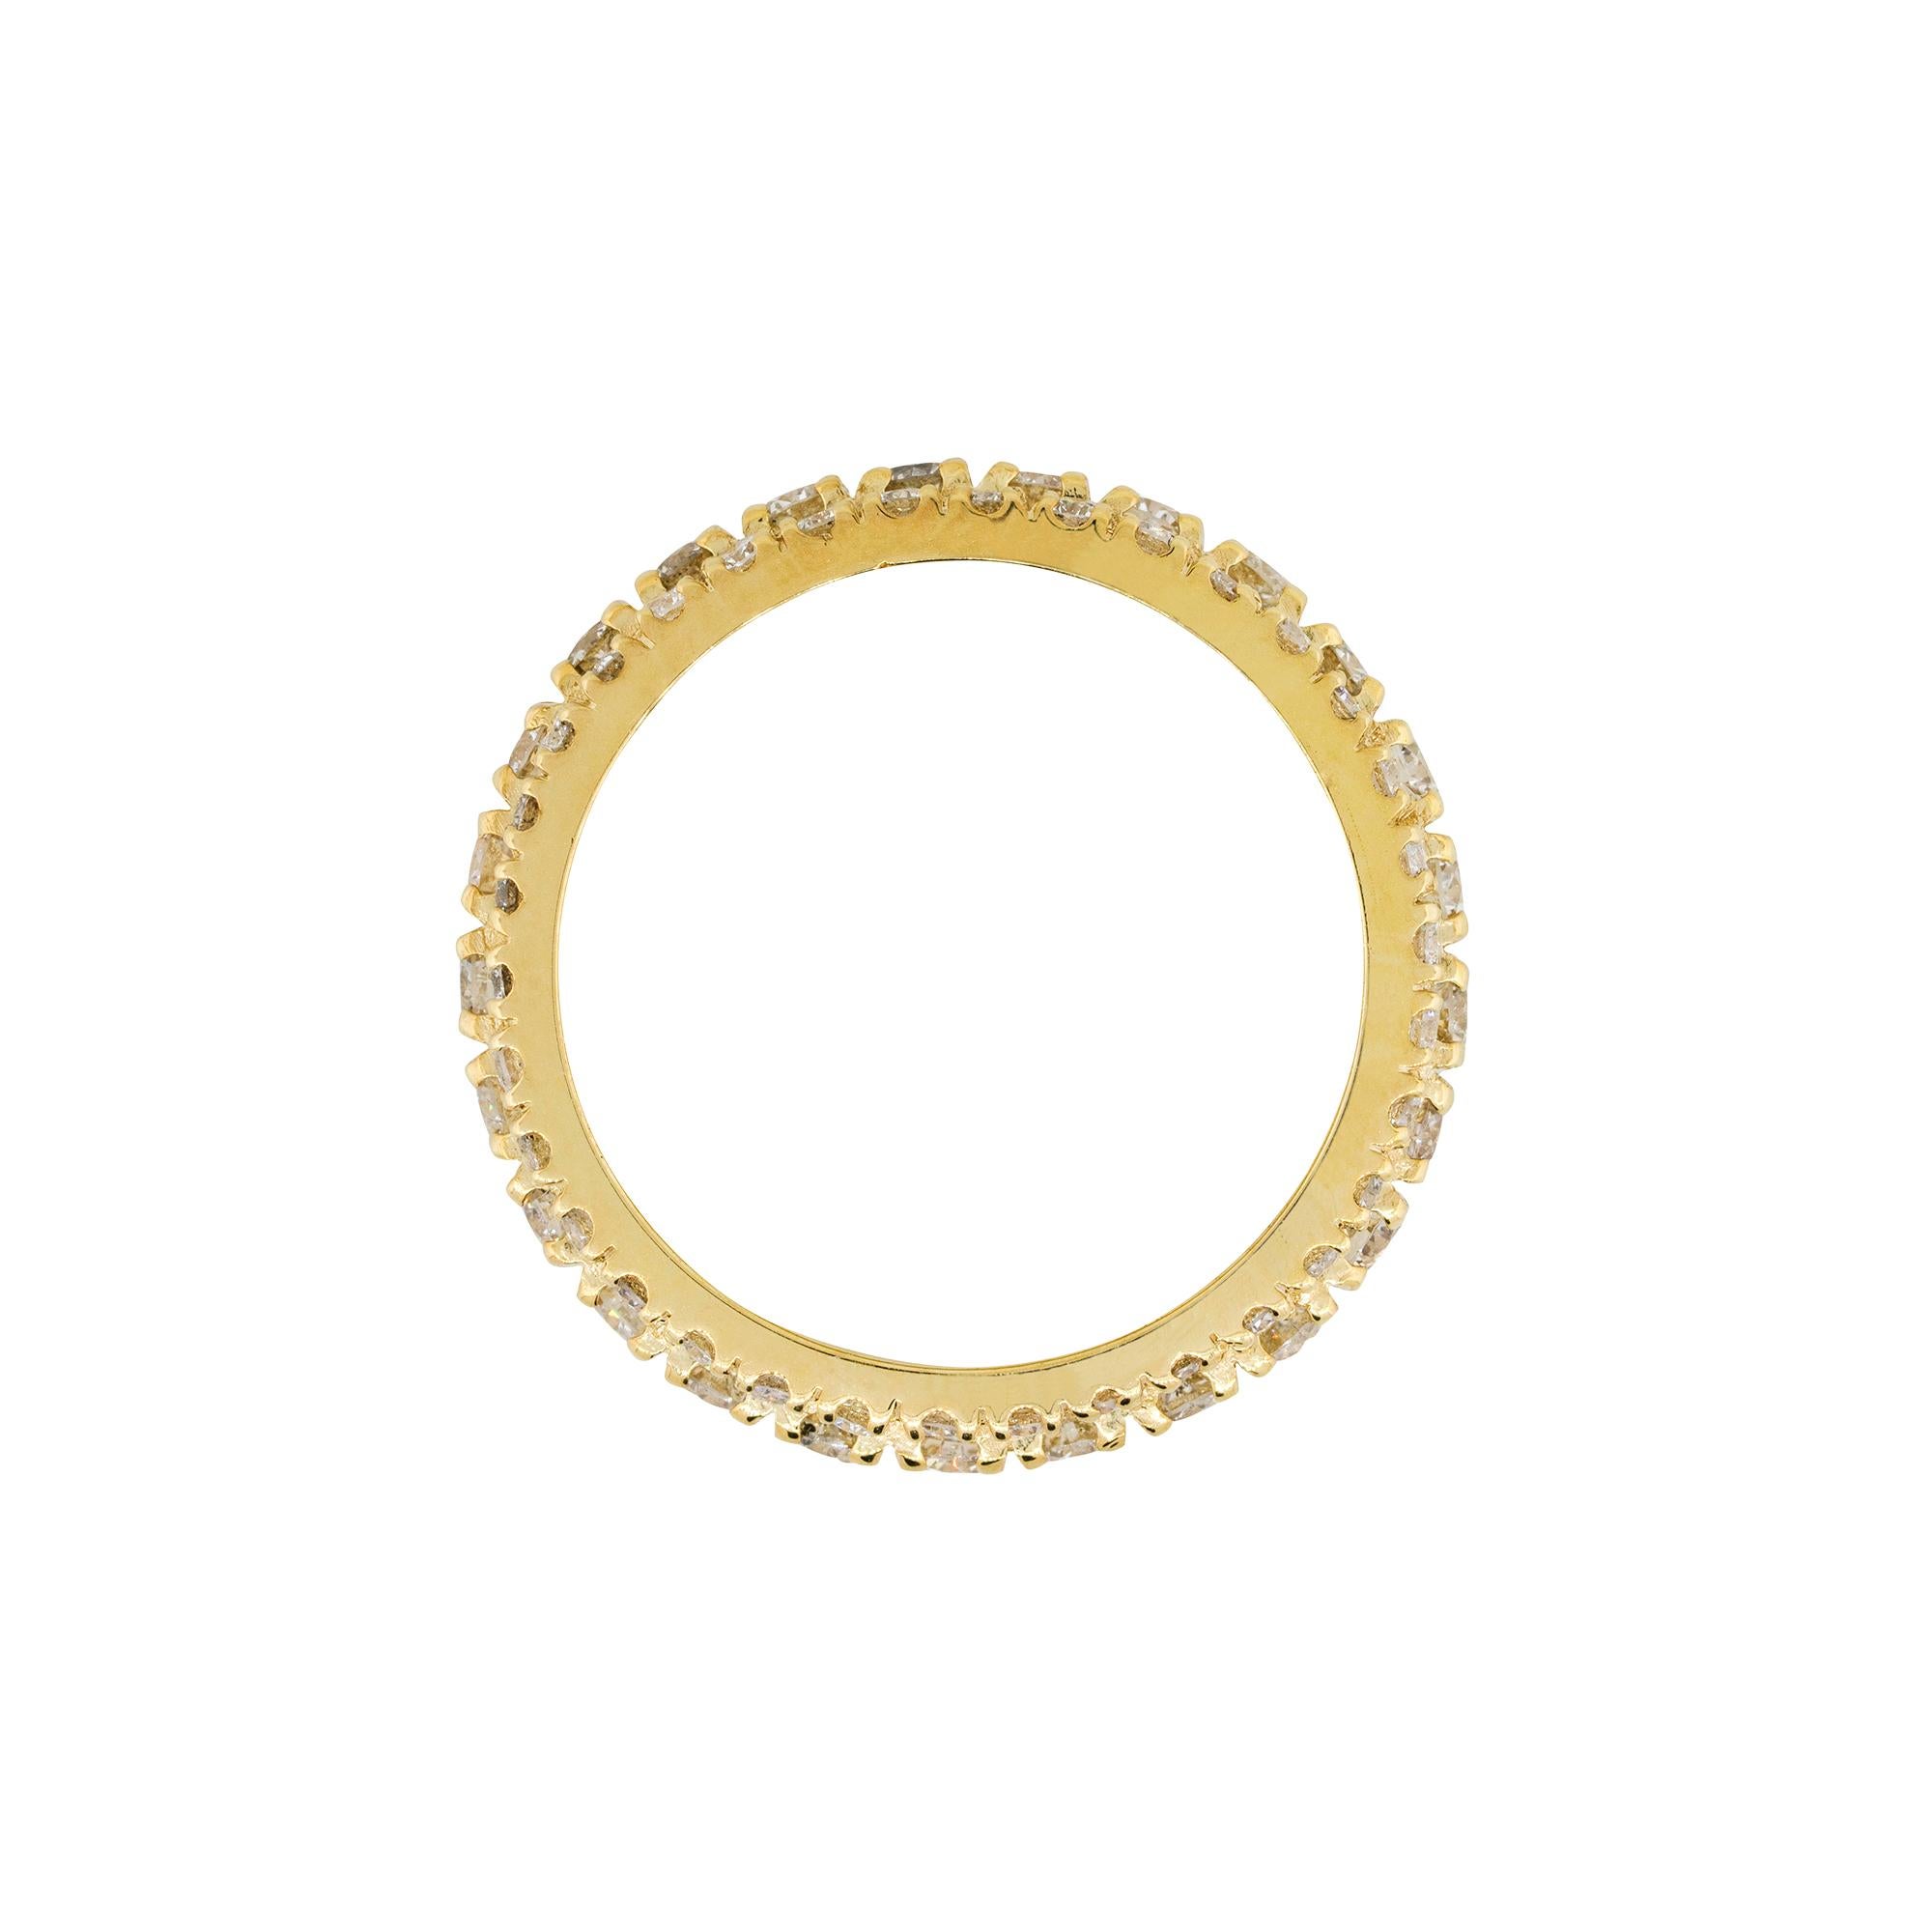 MATERIAL: 14k Gelbgold
Diamant-Details: Ungefähr 3,85ctw runde Brillanten. Die Diamanten haben eine Farbe von G/H und eine Reinheit von VS.
Ringgröße: 10
Ring-Maße: 1″x 0.25″
Gesamtgewicht: 10,8g (7dwt)
Zusätzliche Details: Dieser Artikel wird mit